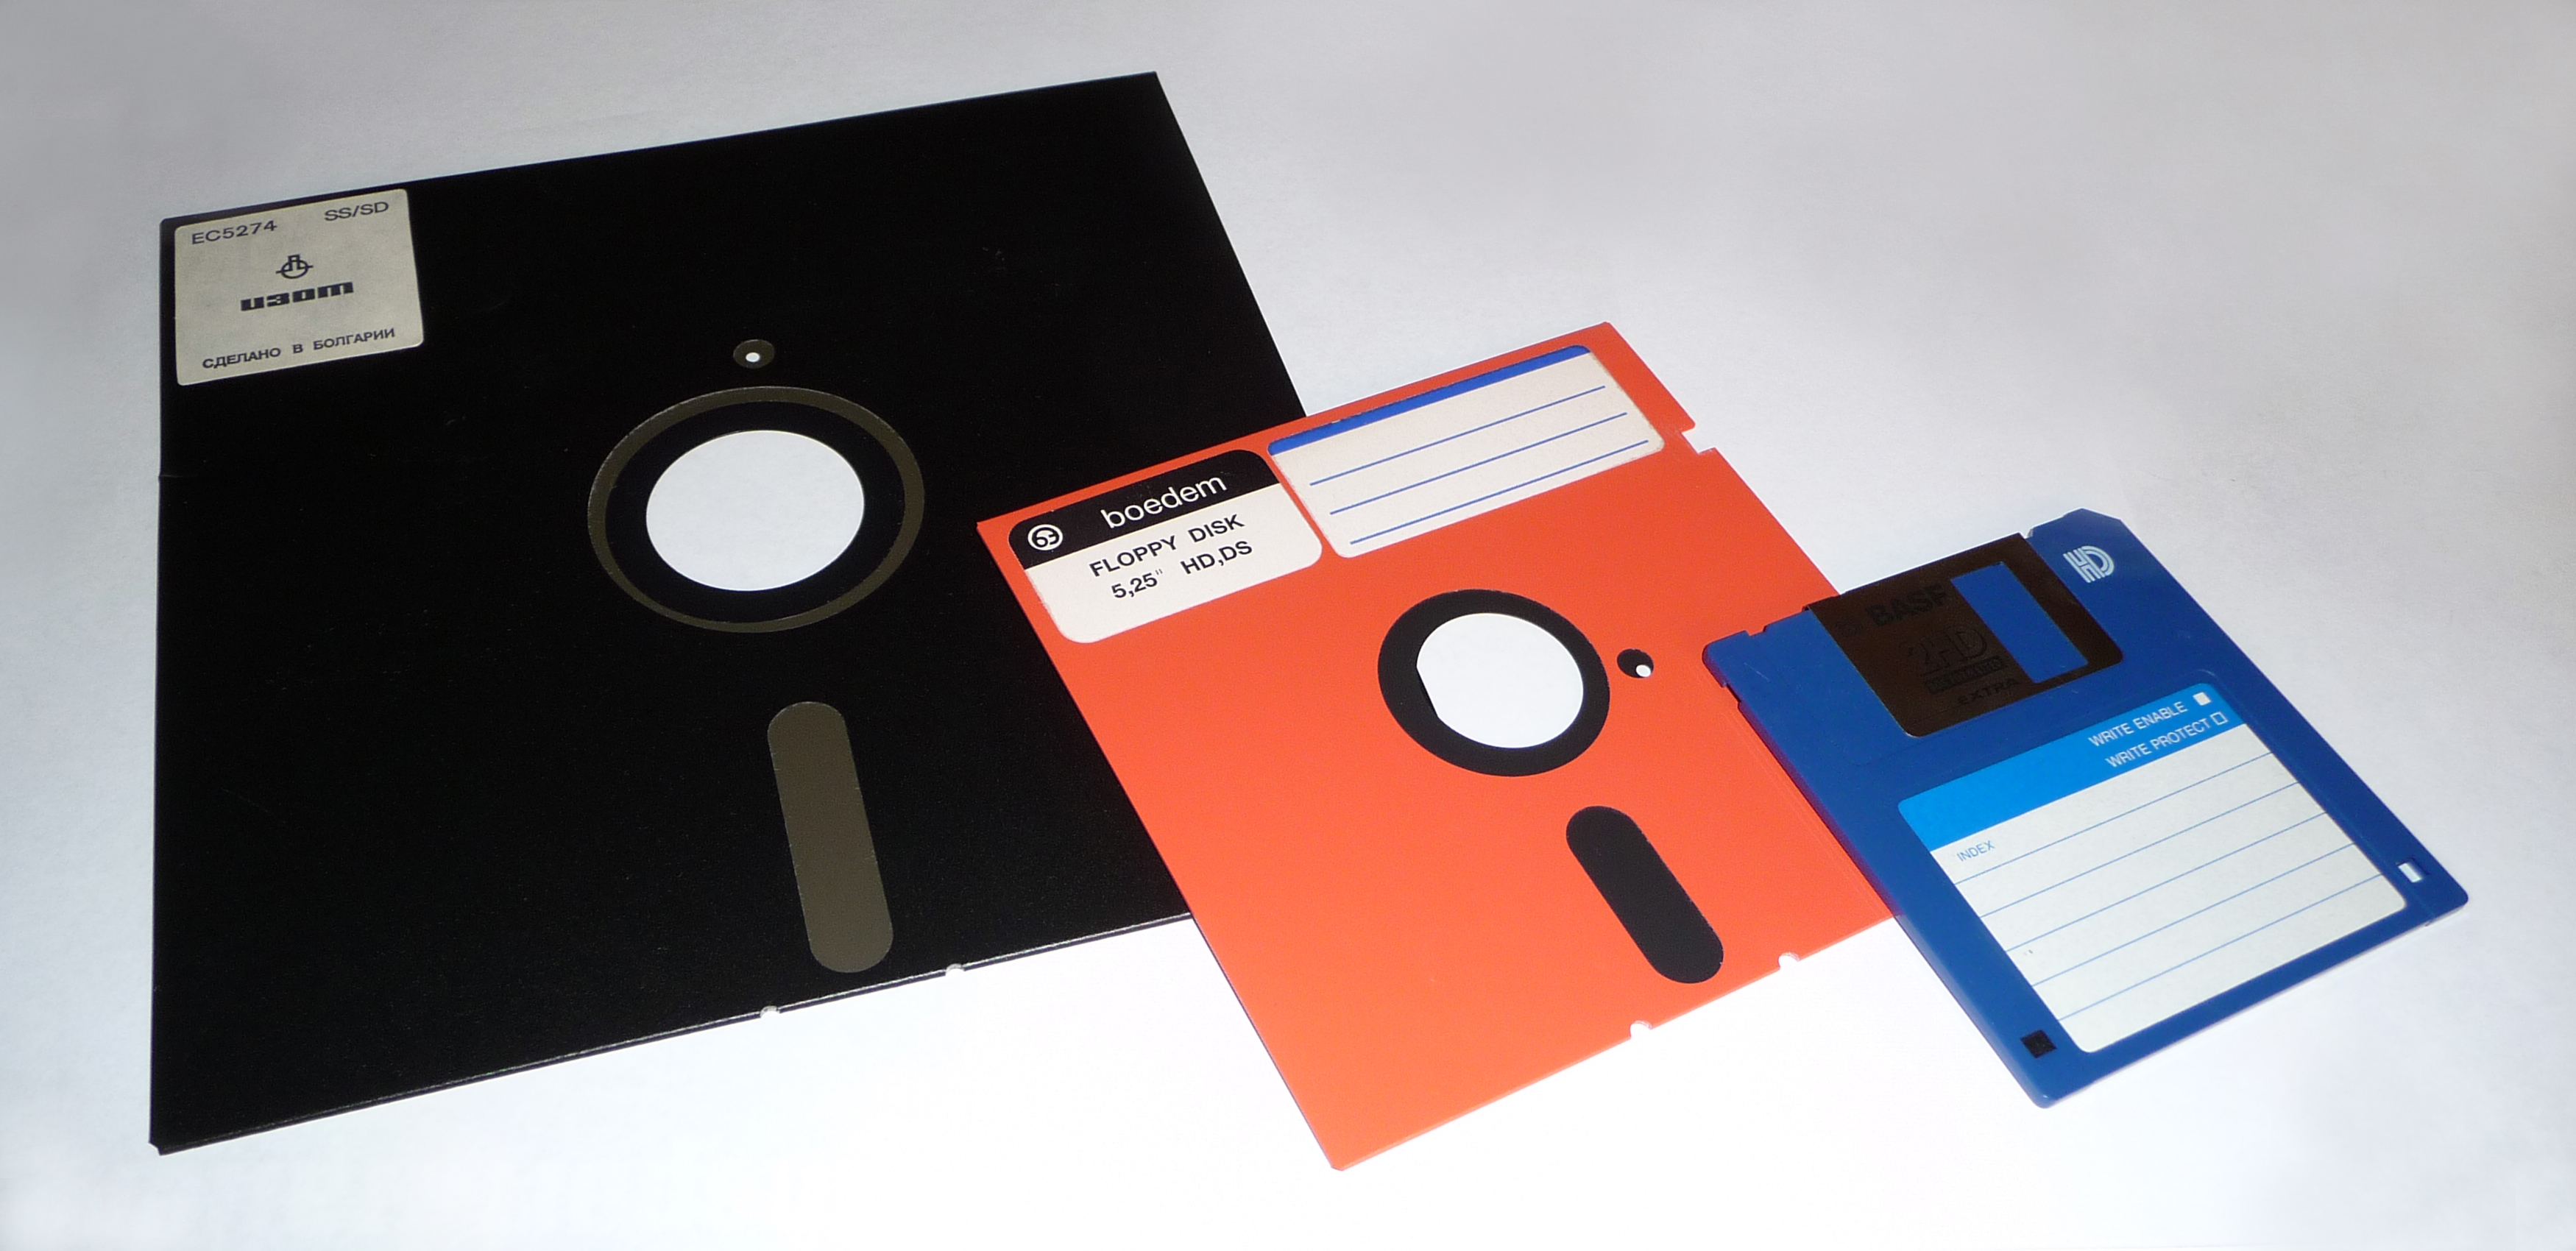 File:Floppy disk 2009 G1.jpg - Wikimedia Commons